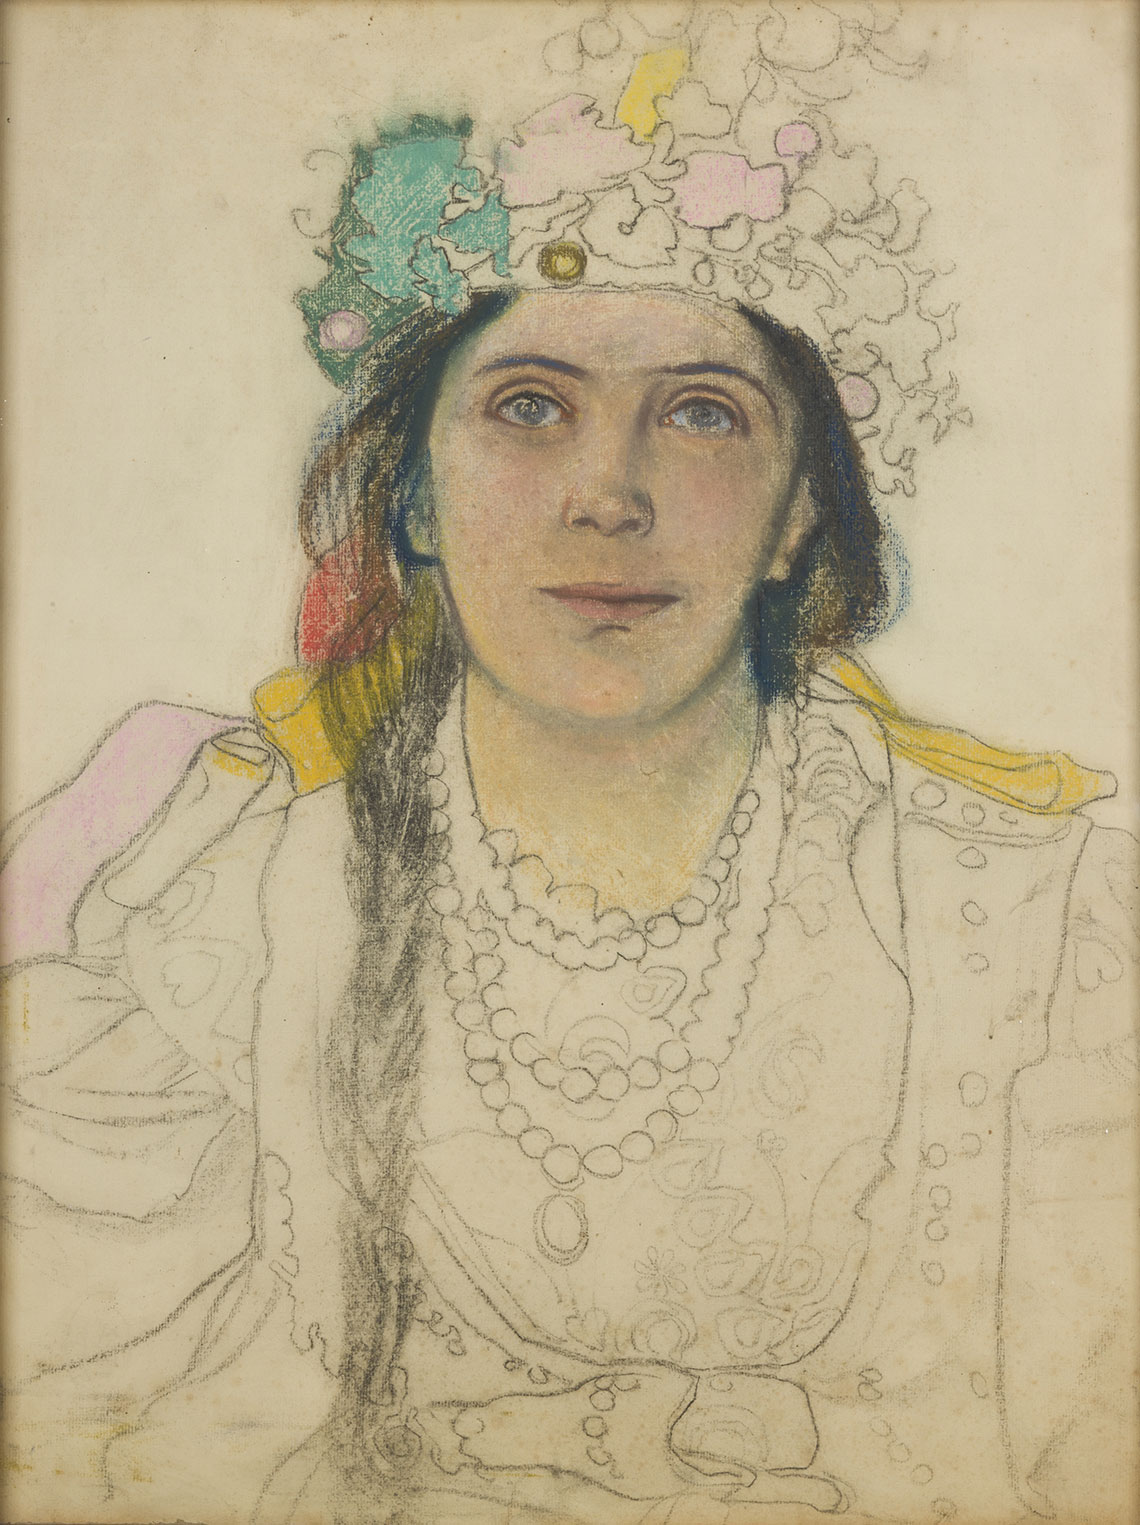 St. Wyspiański, Portret Wandy Siemaszkowej w roli Panny Młodej w "Weselu", 1901